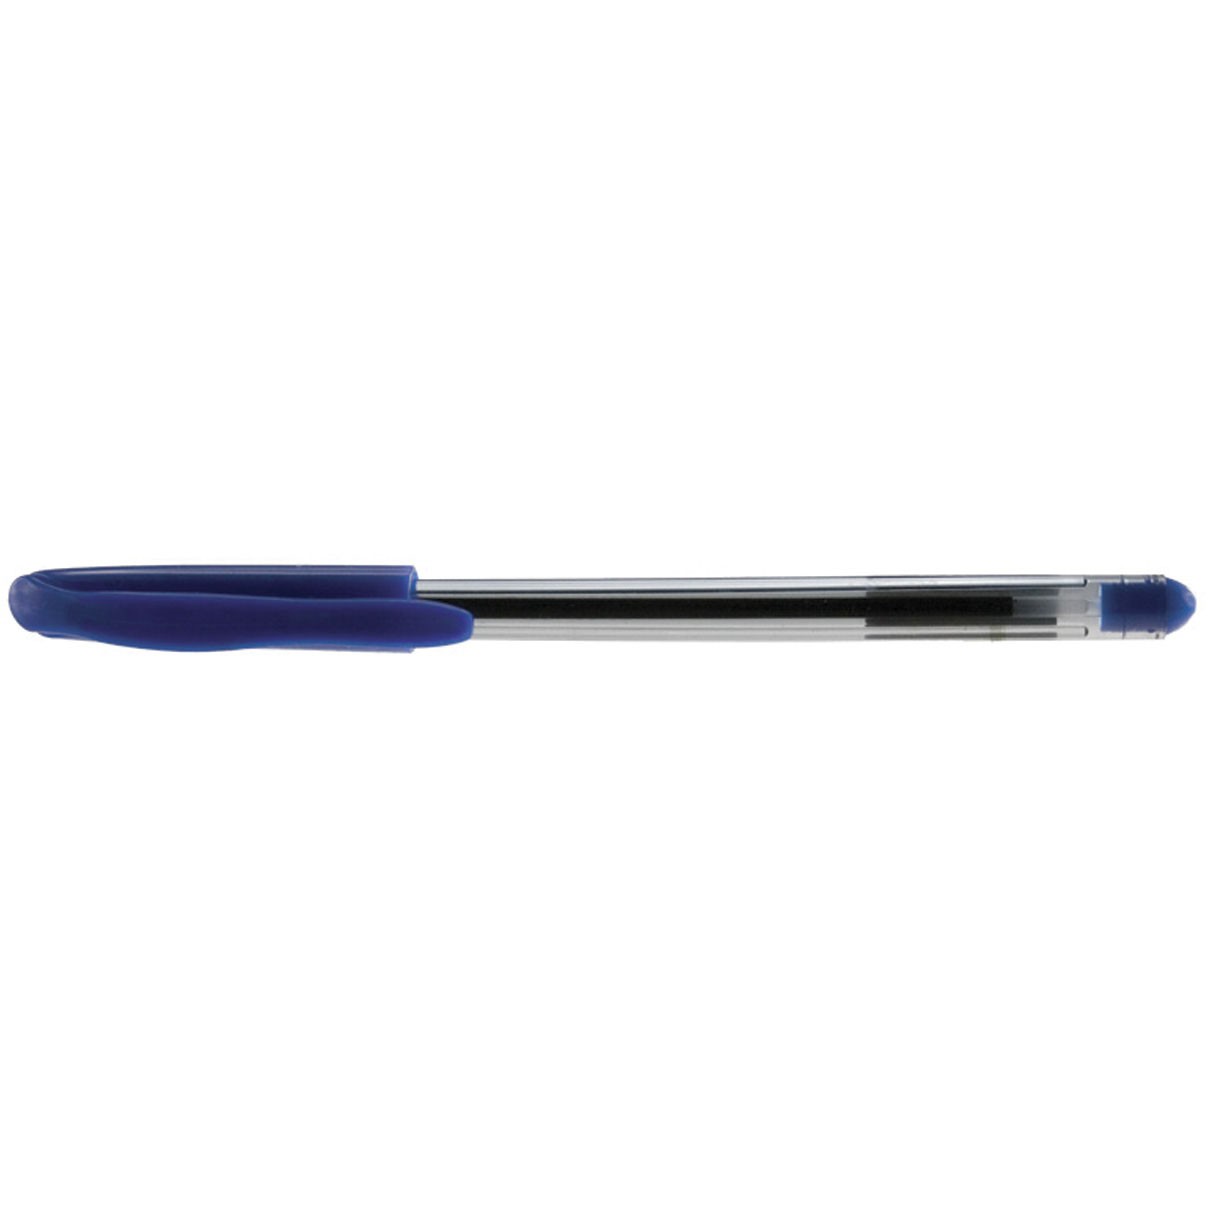 BNT Generic kuglepen med 1,0 mm spids i farven blå